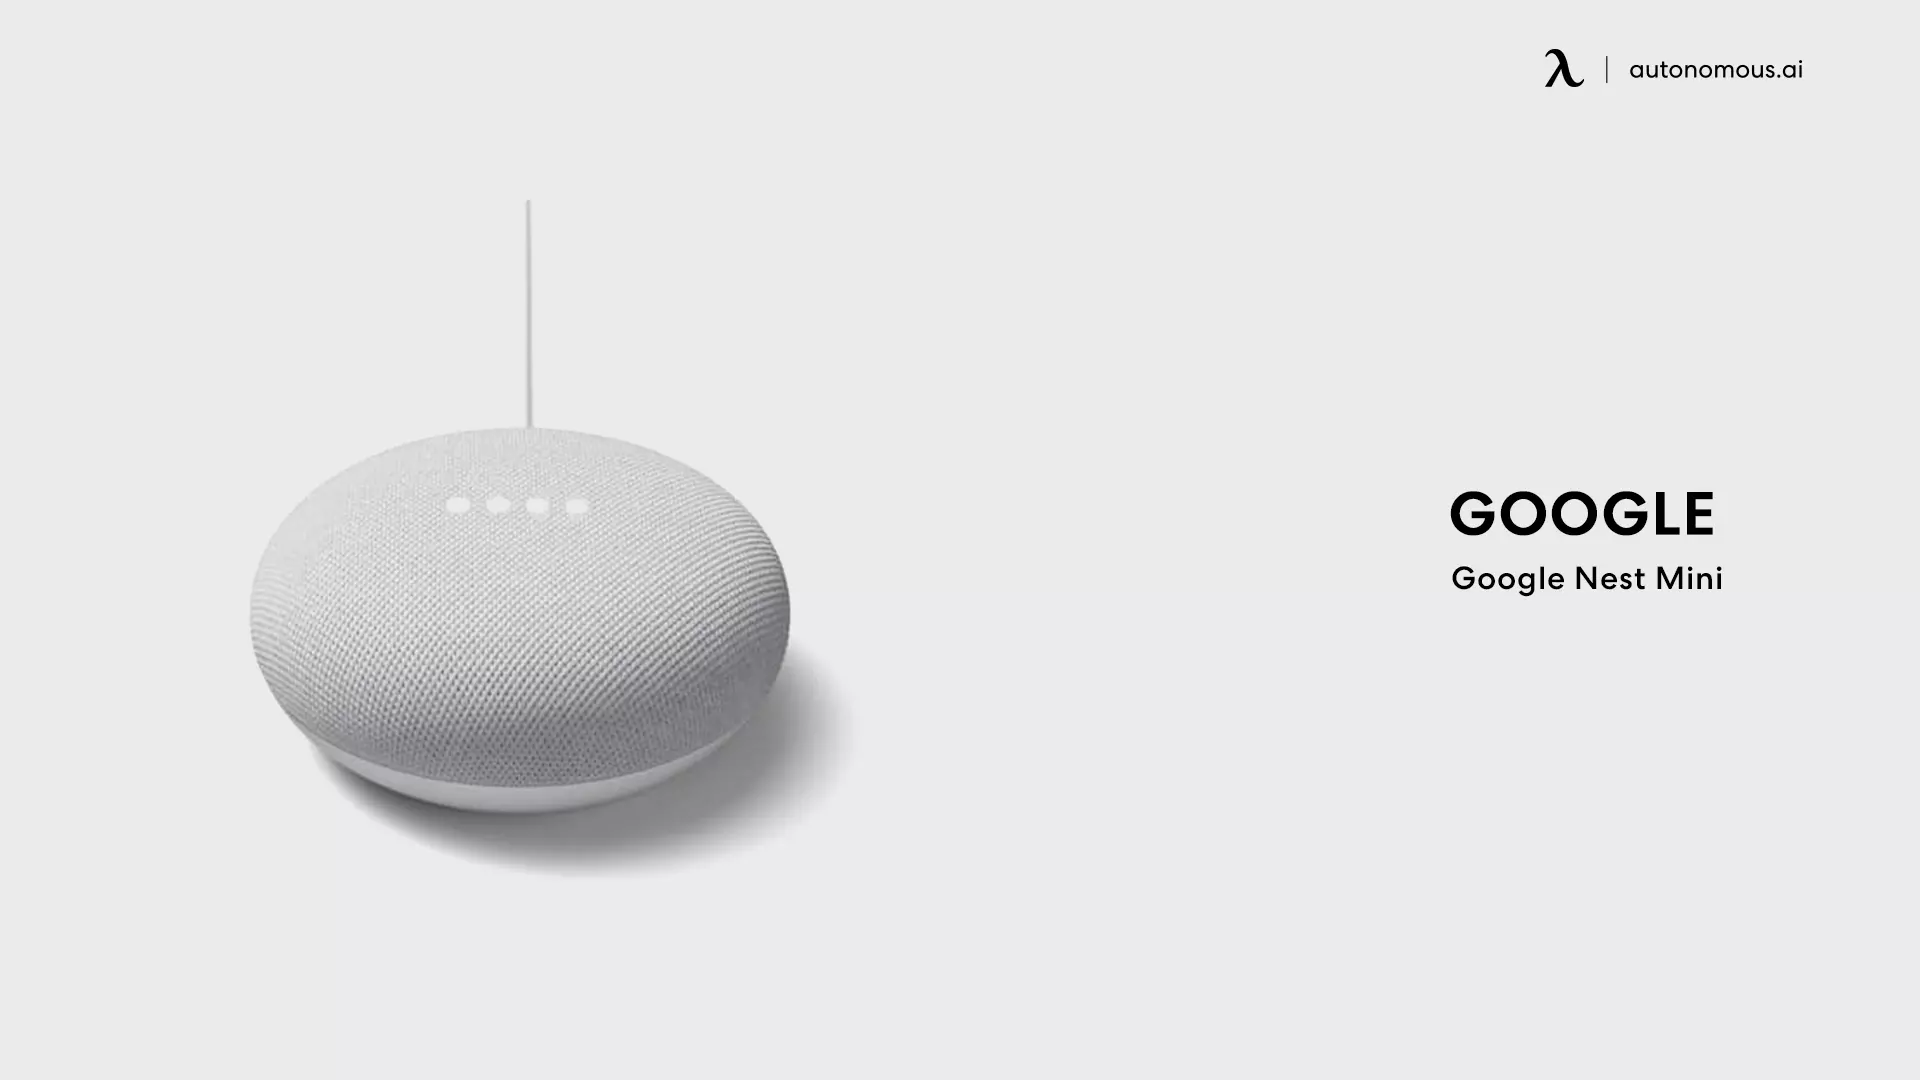 Google Nest Mini - best smart speaker